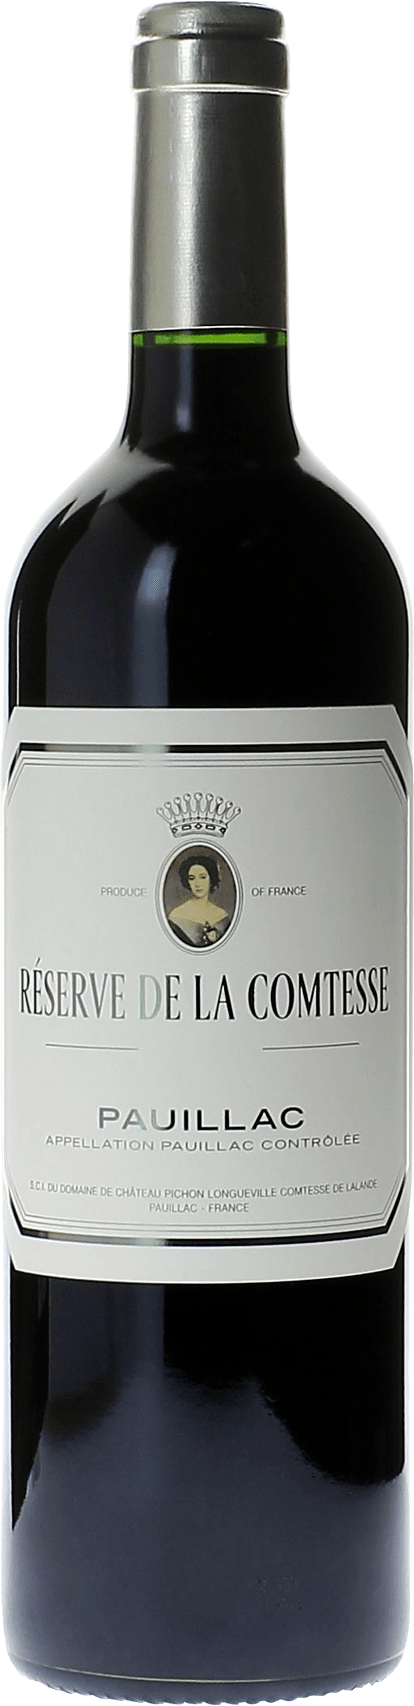 Reserve de la comtesse 2017 2nd Vin de Pichon Comtesse Pauillac, Bordeaux rouge